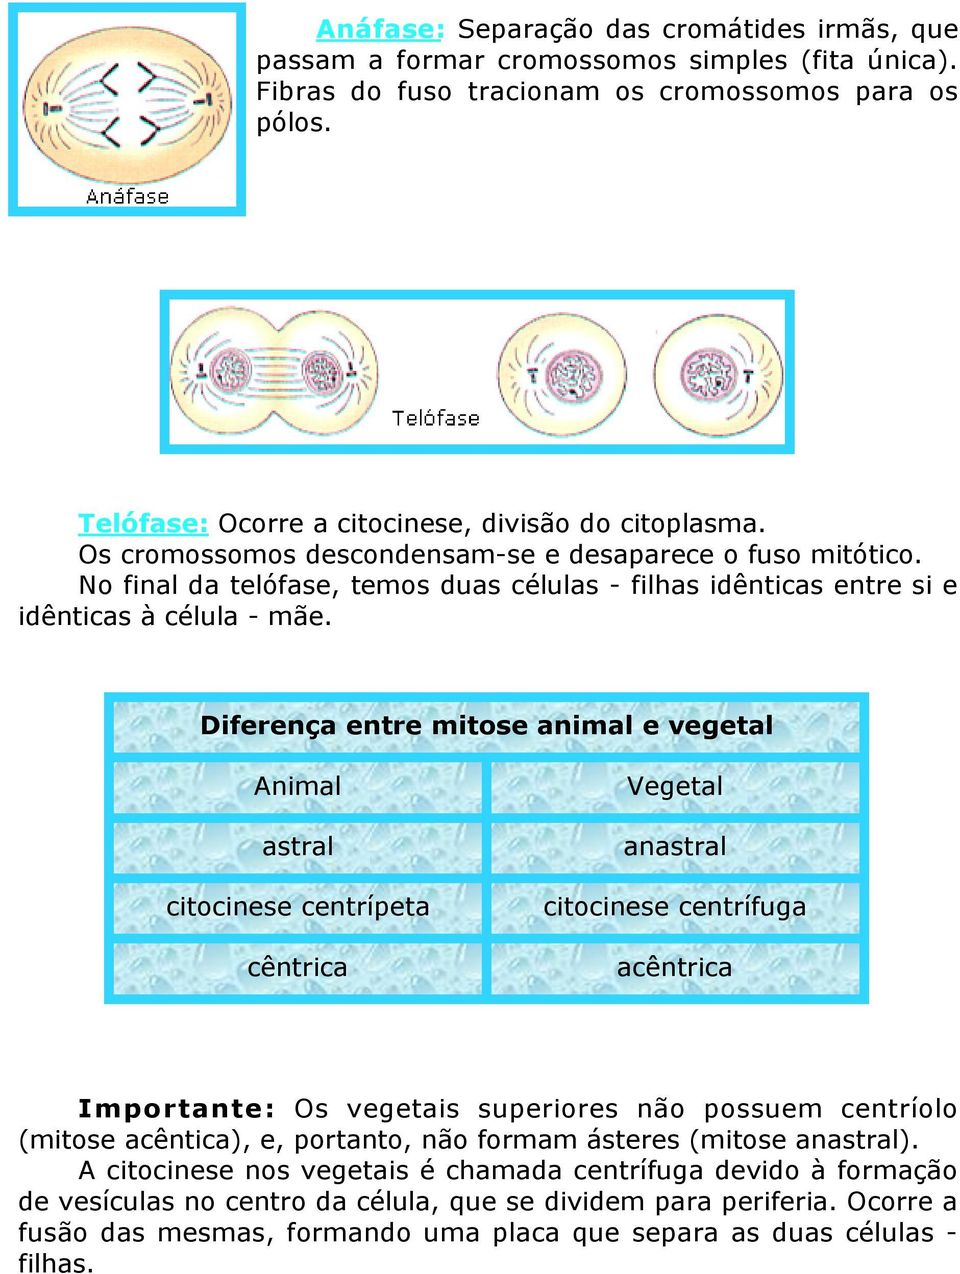 No final da telófase, temos duas células - filhas idênticas entre si e idênticas à célula - mãe.